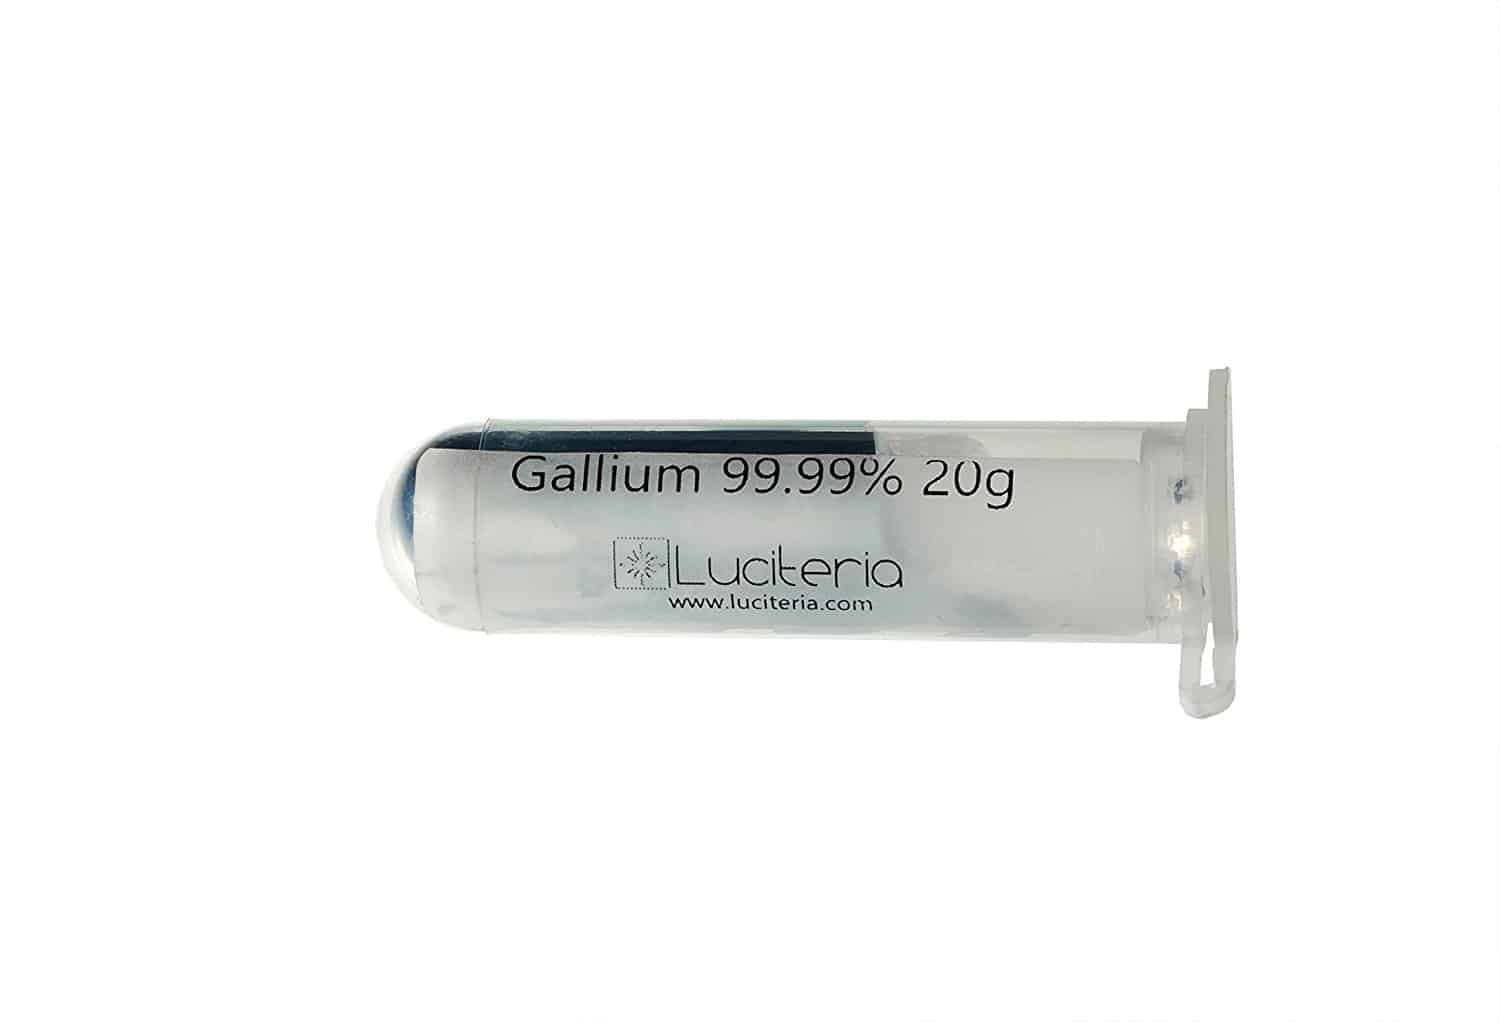 Gallium Metal 20g 99.99% Pure